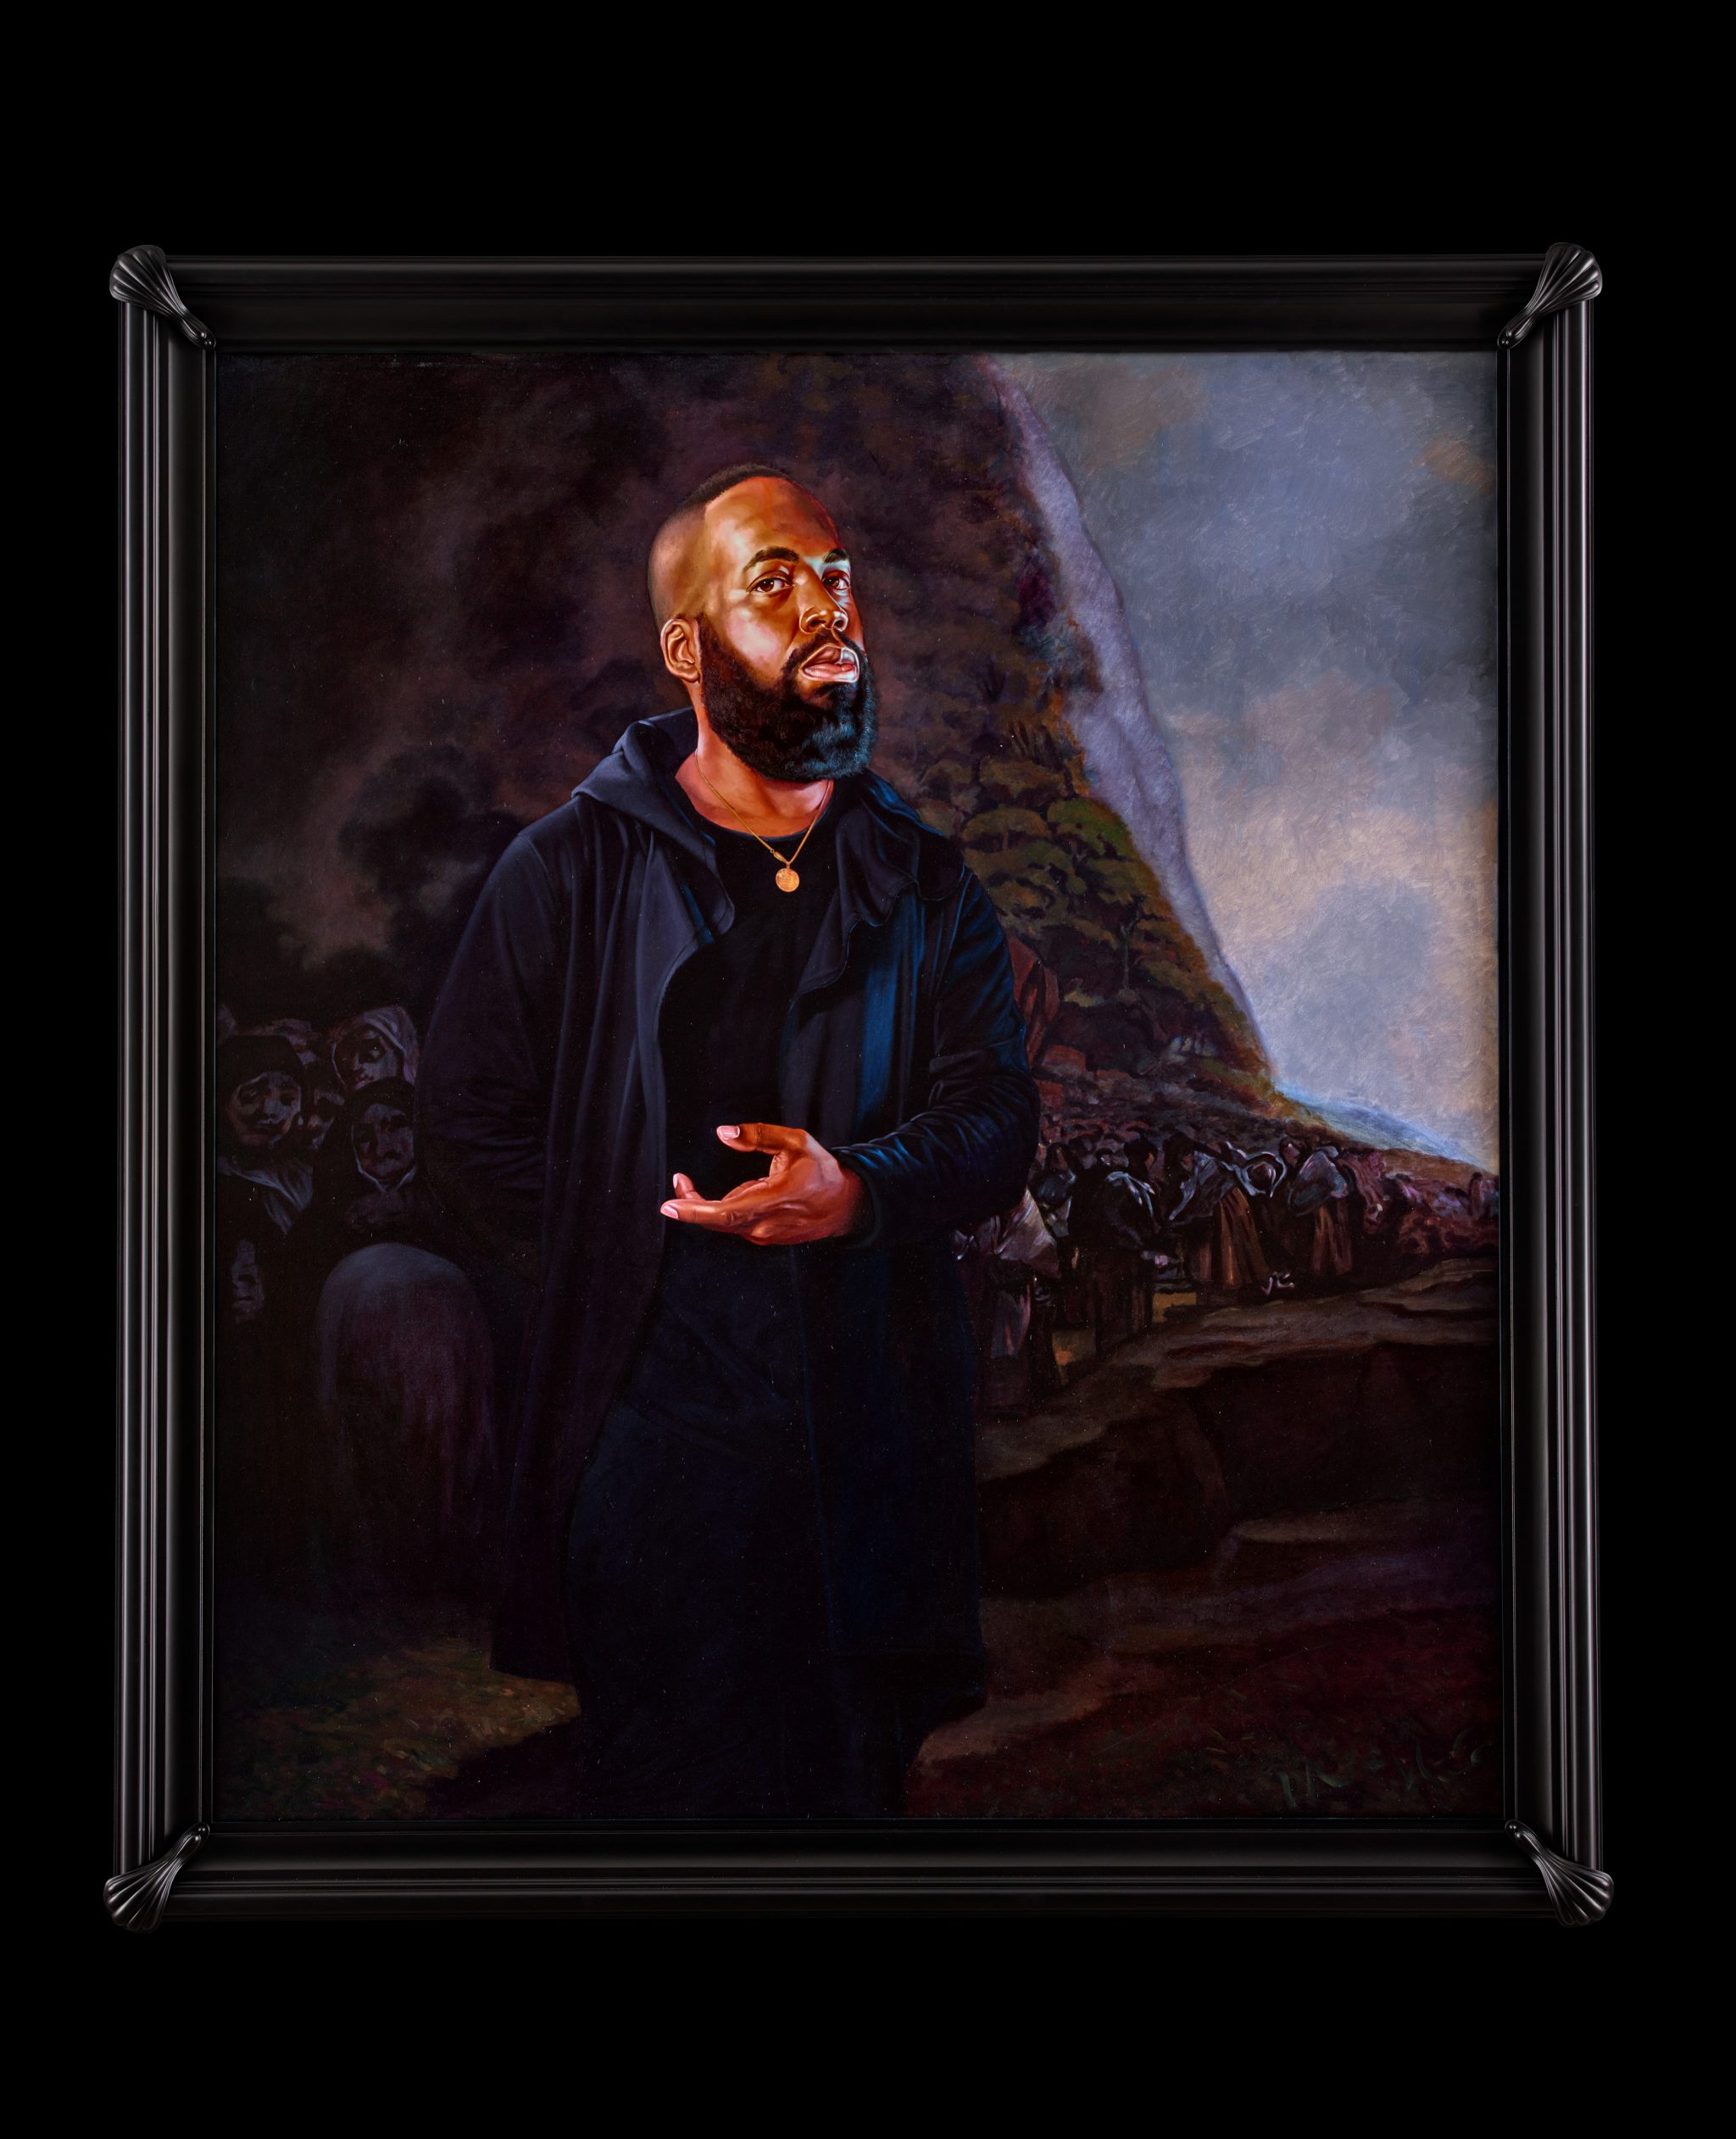 Kehinde Wiley | Trickster, Sean Kelly Gallery, New York City, USA, May 6 - June 17, 2017 | Portrait of Derrick Adams, El Santo Oficio , 2017 Oil on Canvas. | 13